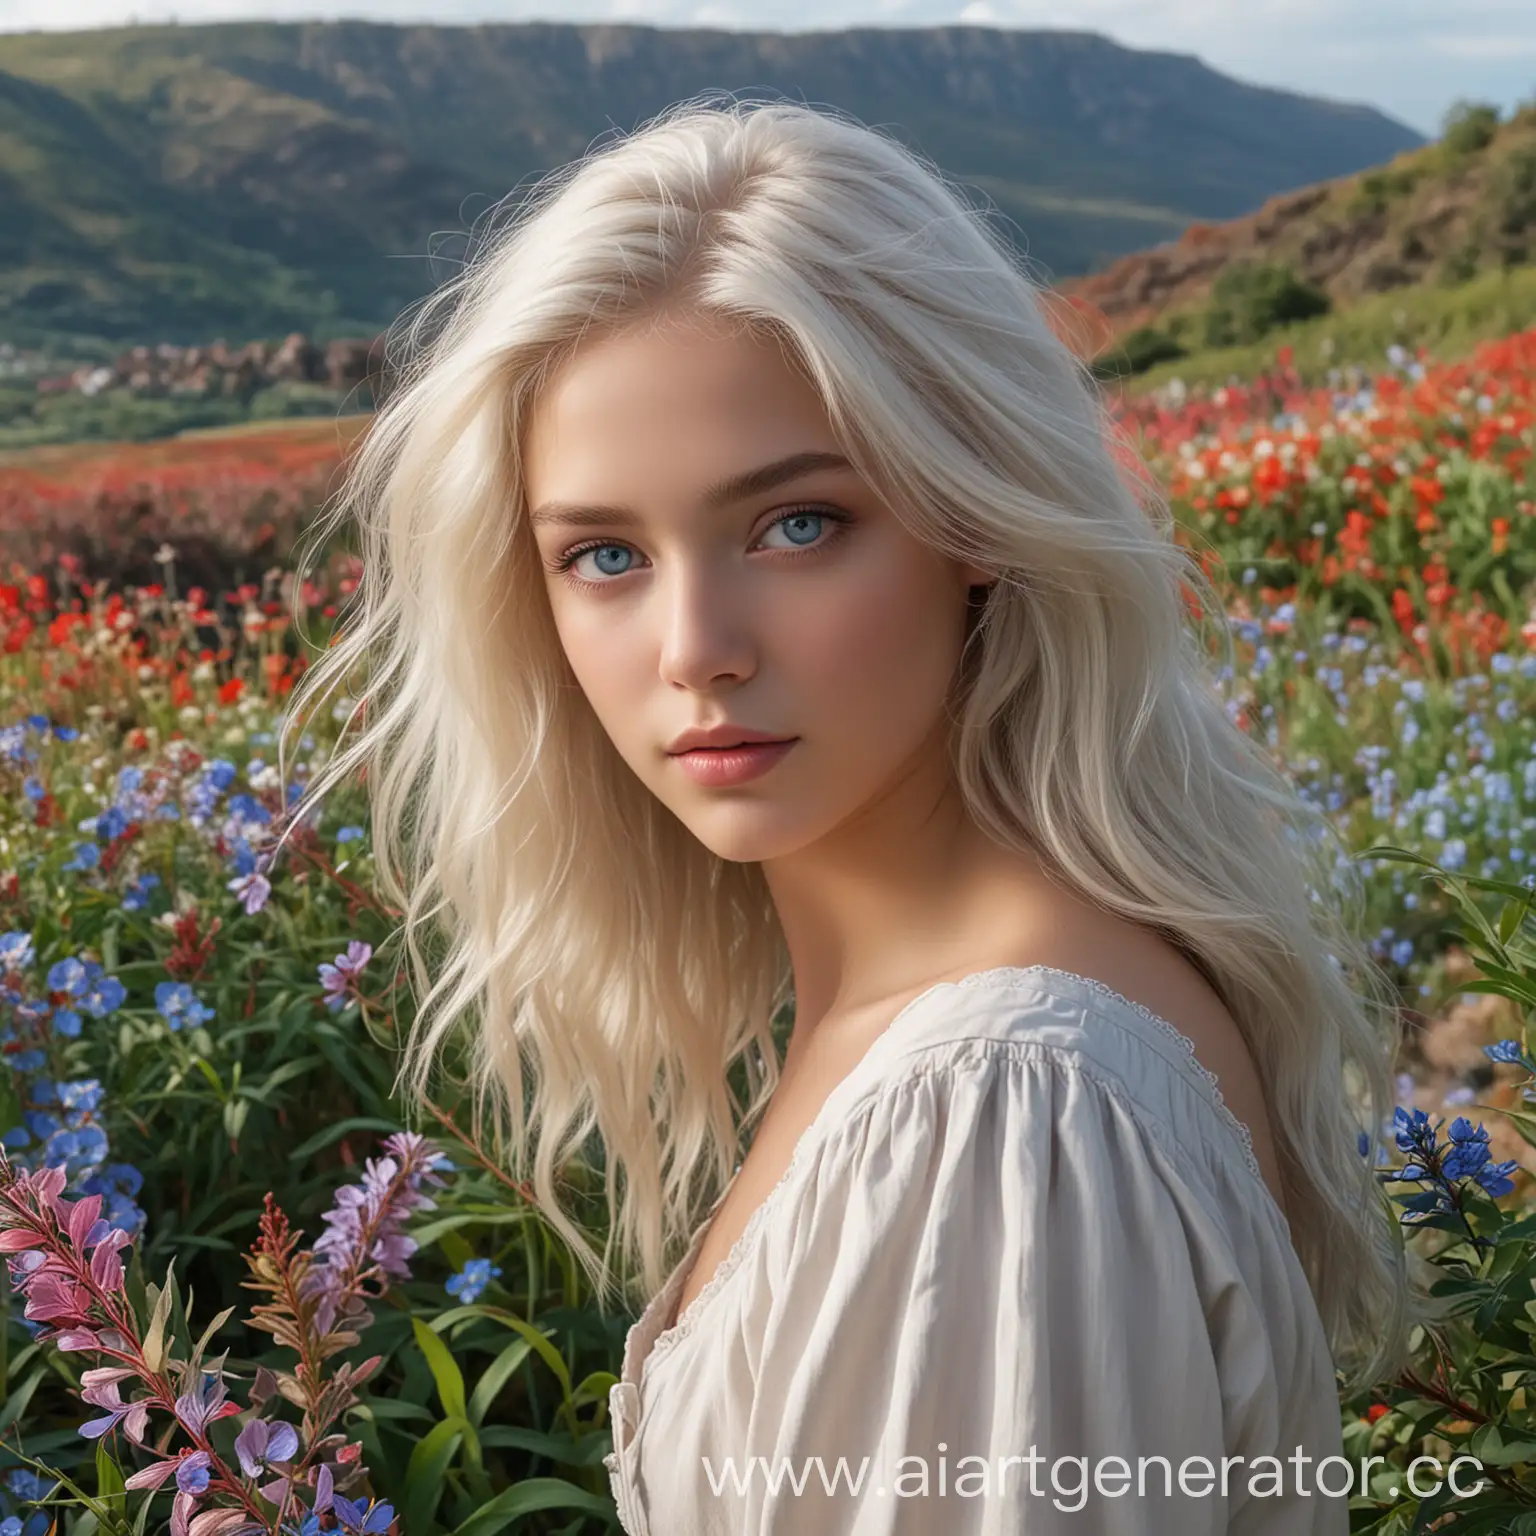  Лия Аллен, девушка восемнадцати лет, с платиновыми волосами и серо-голубыми глазами. Она стоит на фоне красивого пейзажа, окруженного разноцветными растениями. Ее идеальная фигура выглядит изящно и грациозно. В ее глазах блеск света отражается, будто она восхищена красотой окружающего мира.